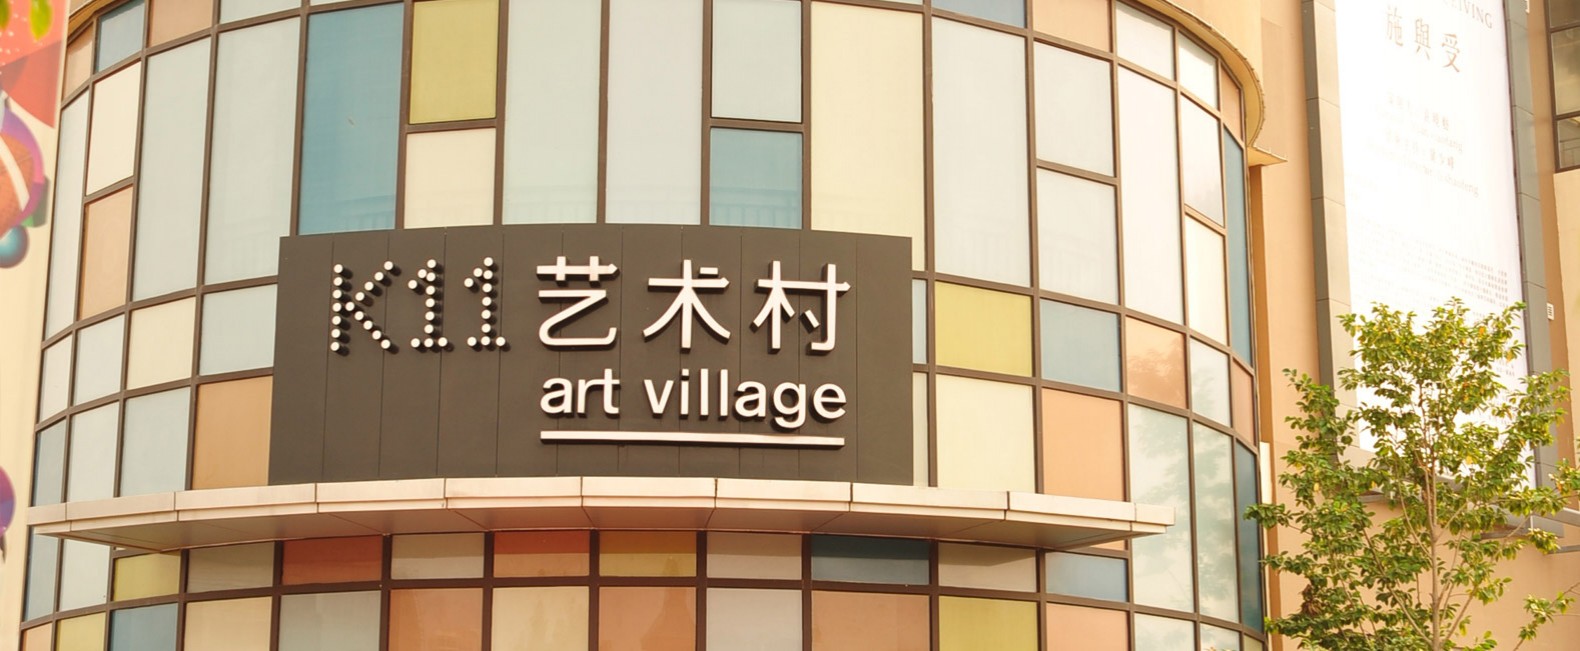 K11 Art Mall Shanghai / Kokaistudios